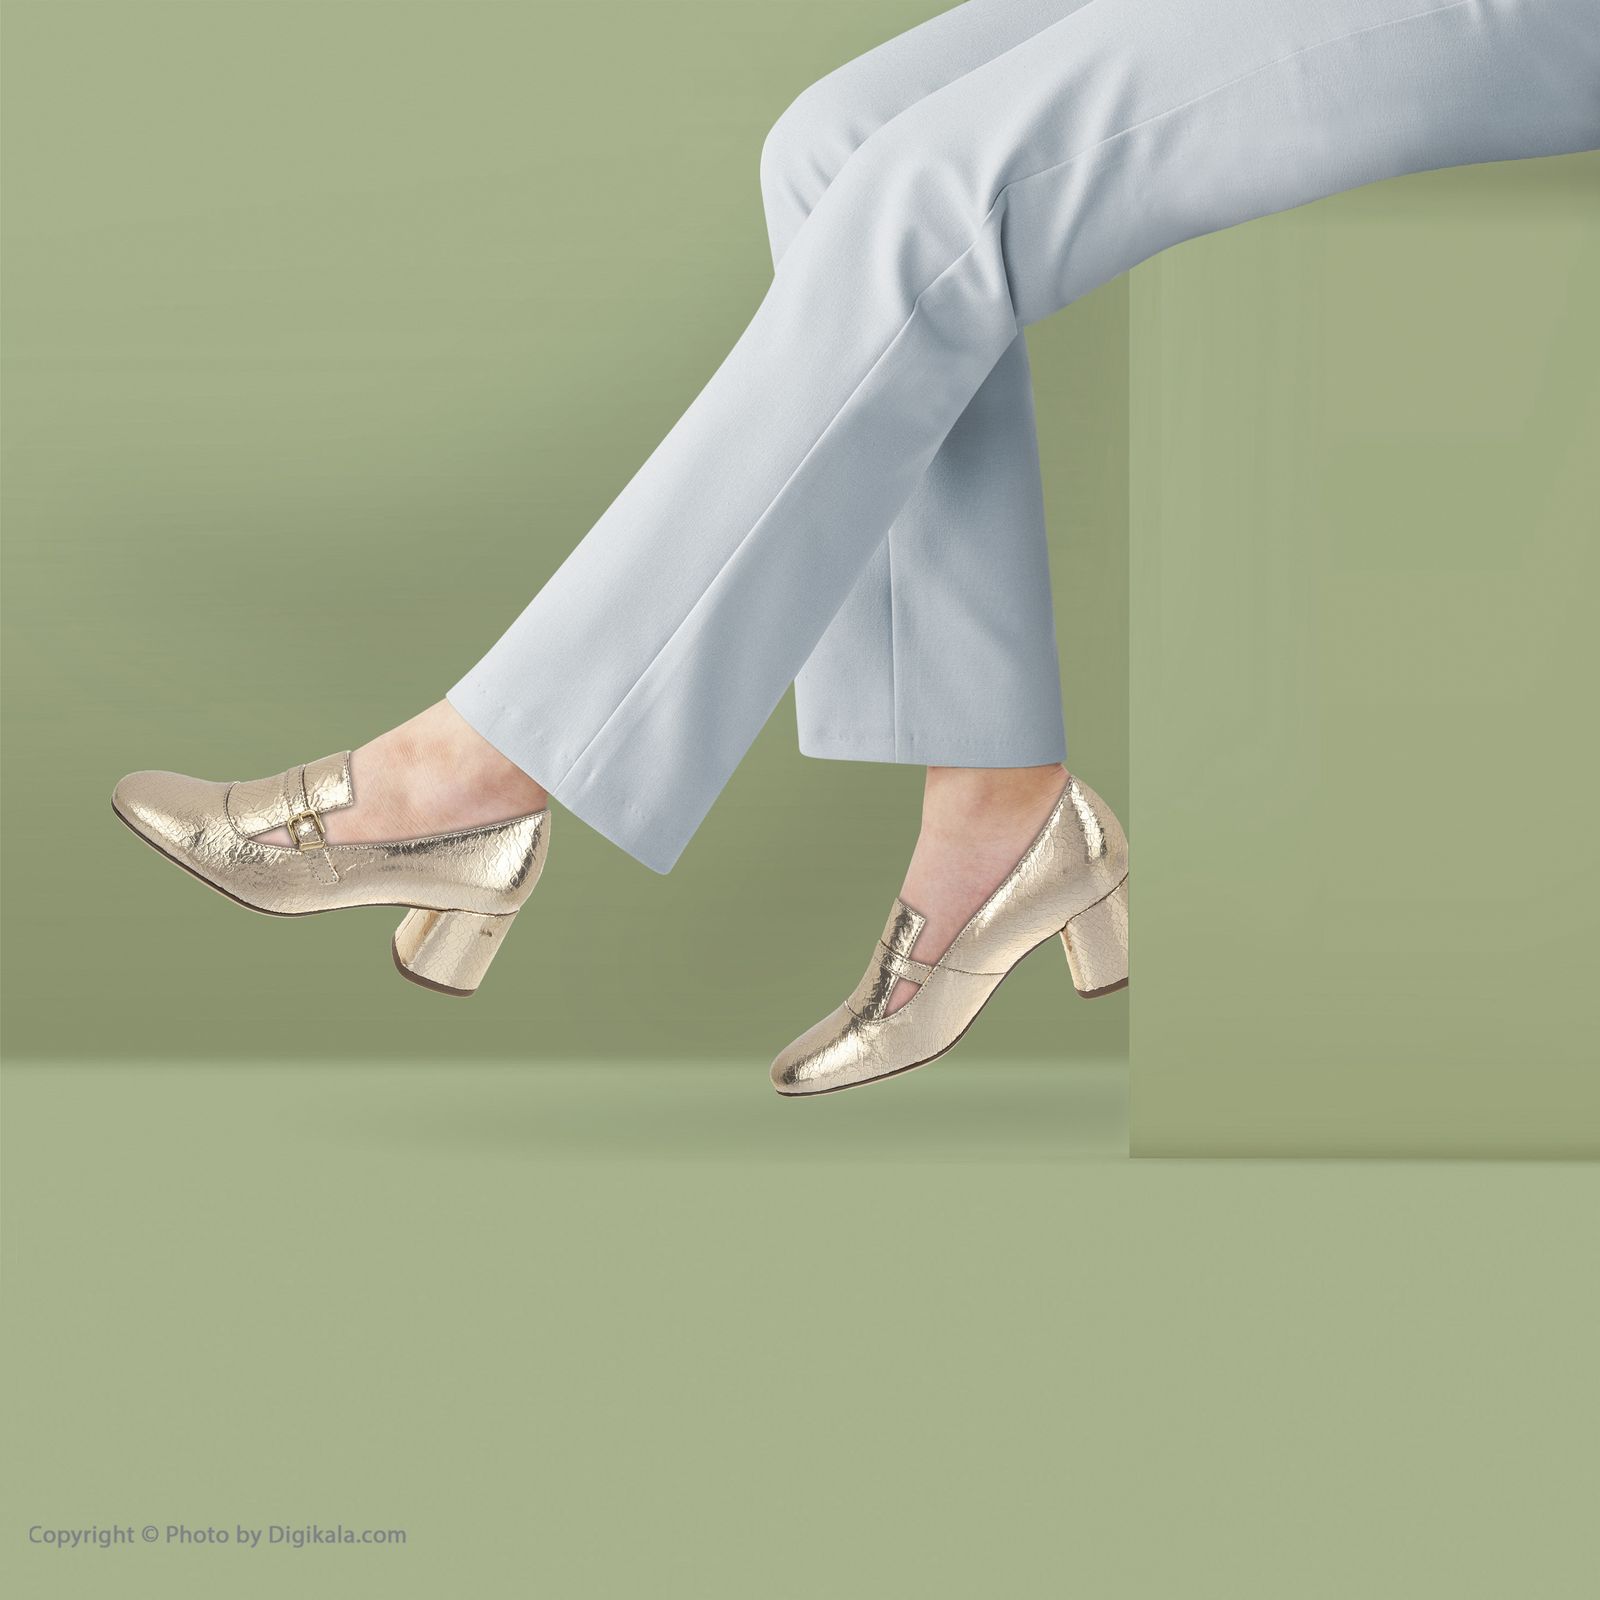 کفش زنانه هوگل مدل 5-104701-7500 - طلایی - 2